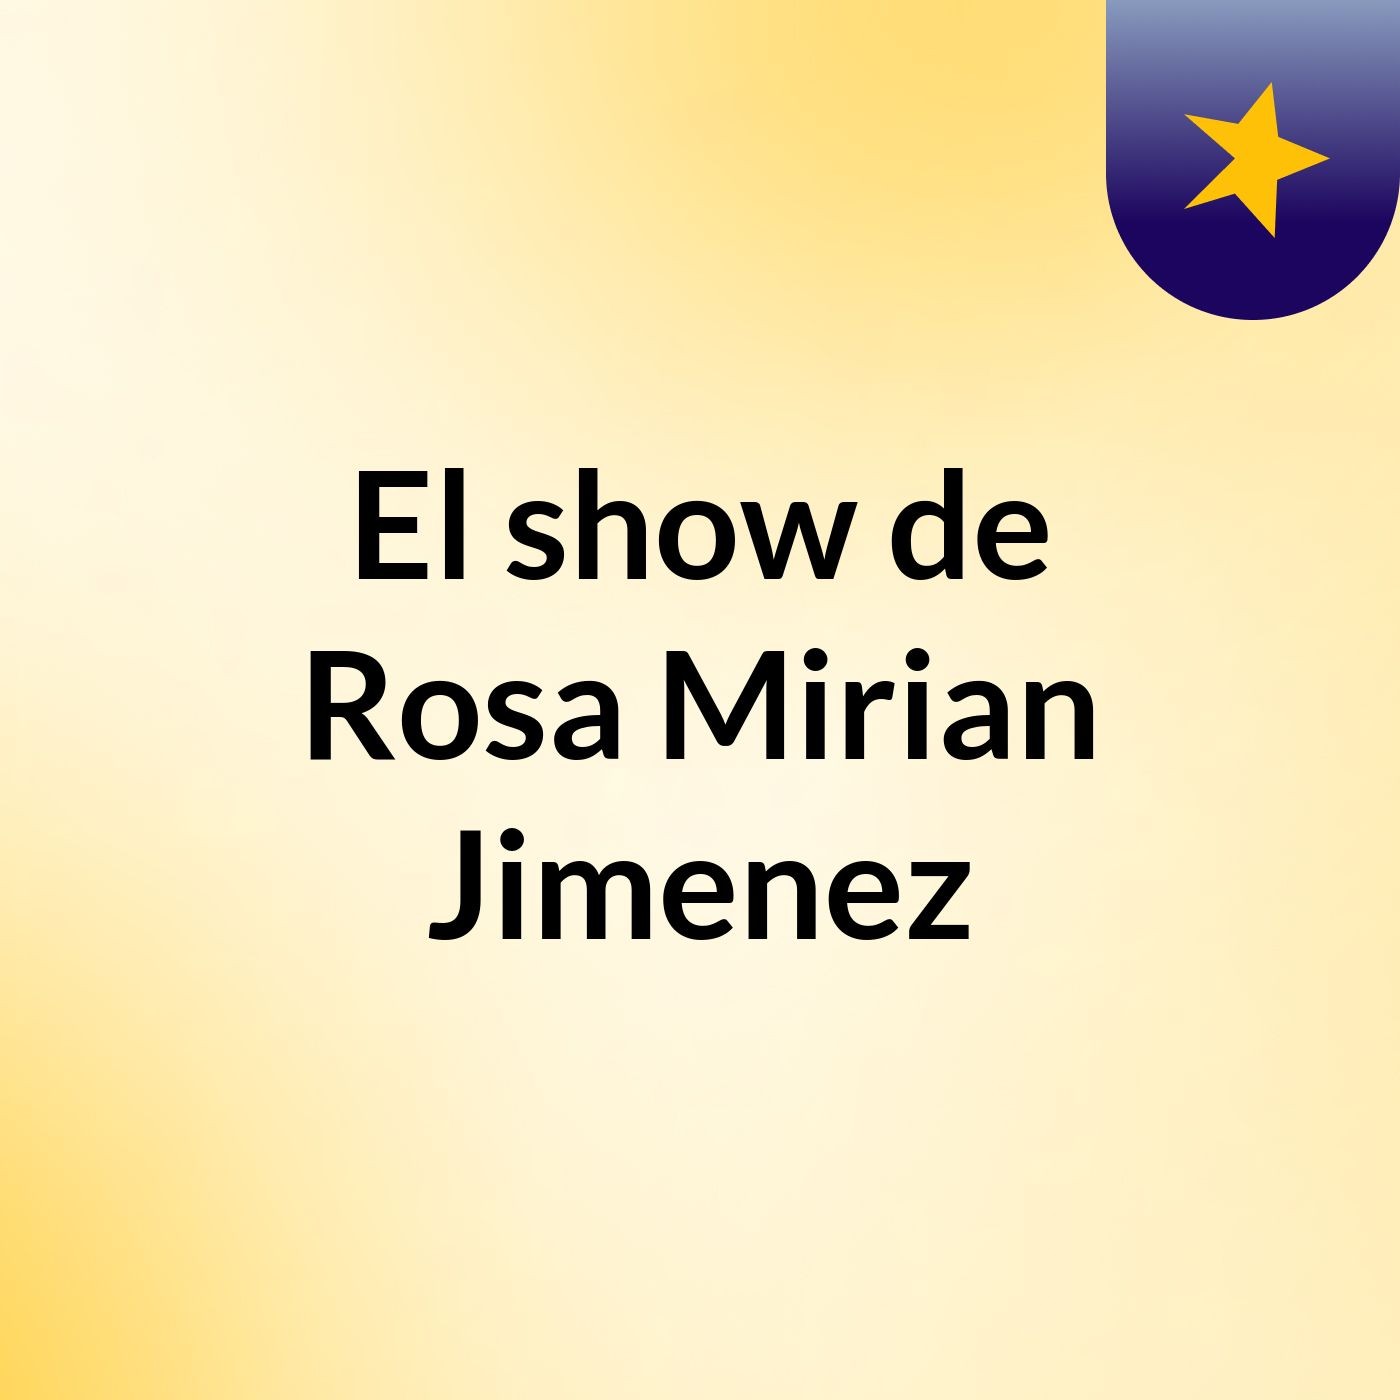 Episodio 2 - El show de Rosa Mirian Jimenez